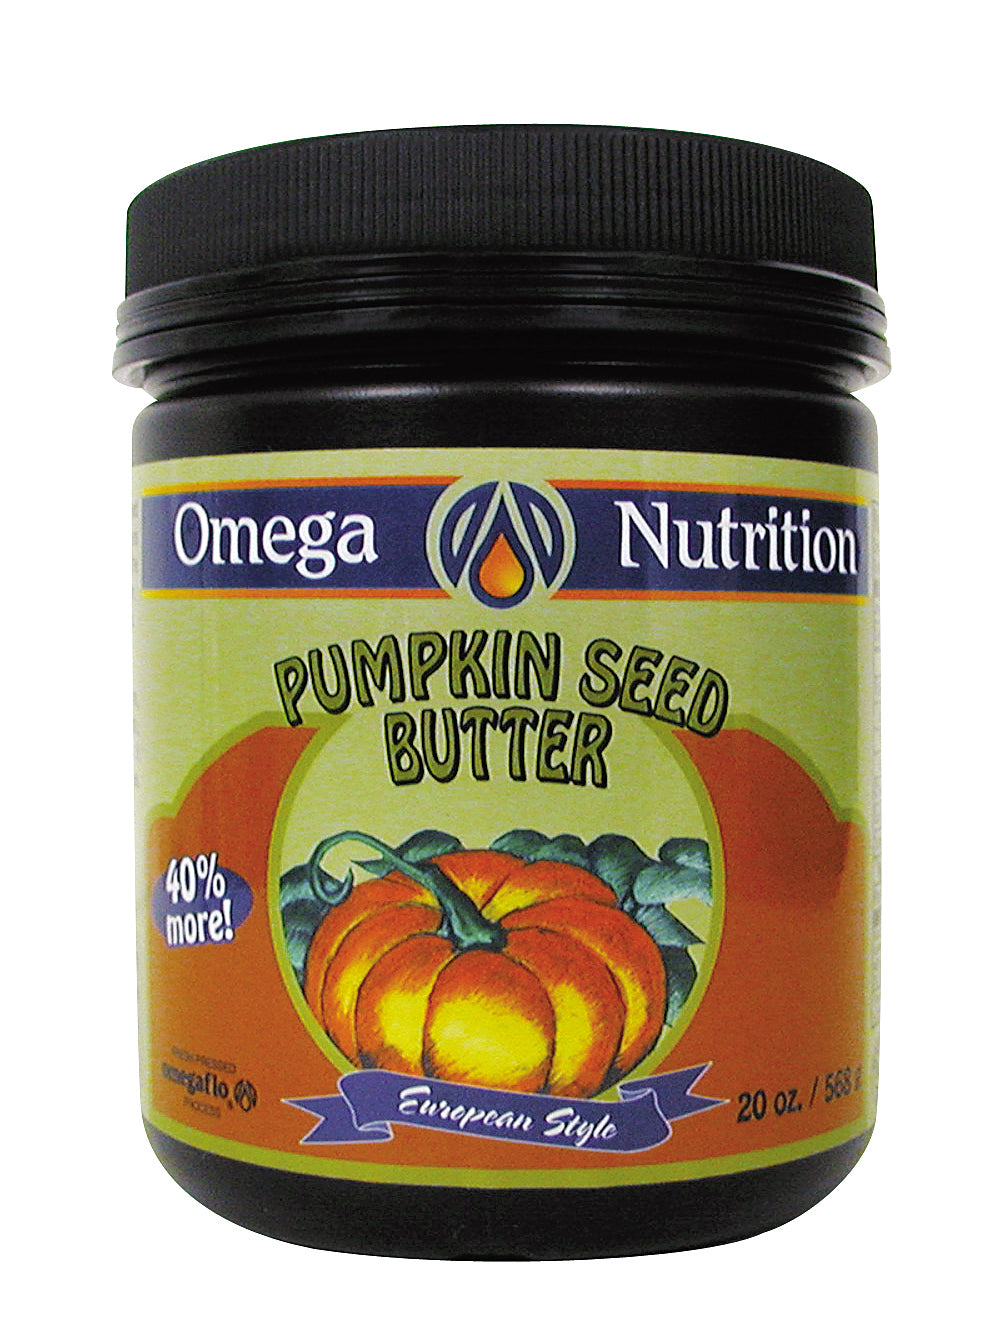 Pumpkin Seed Butter 20 oz